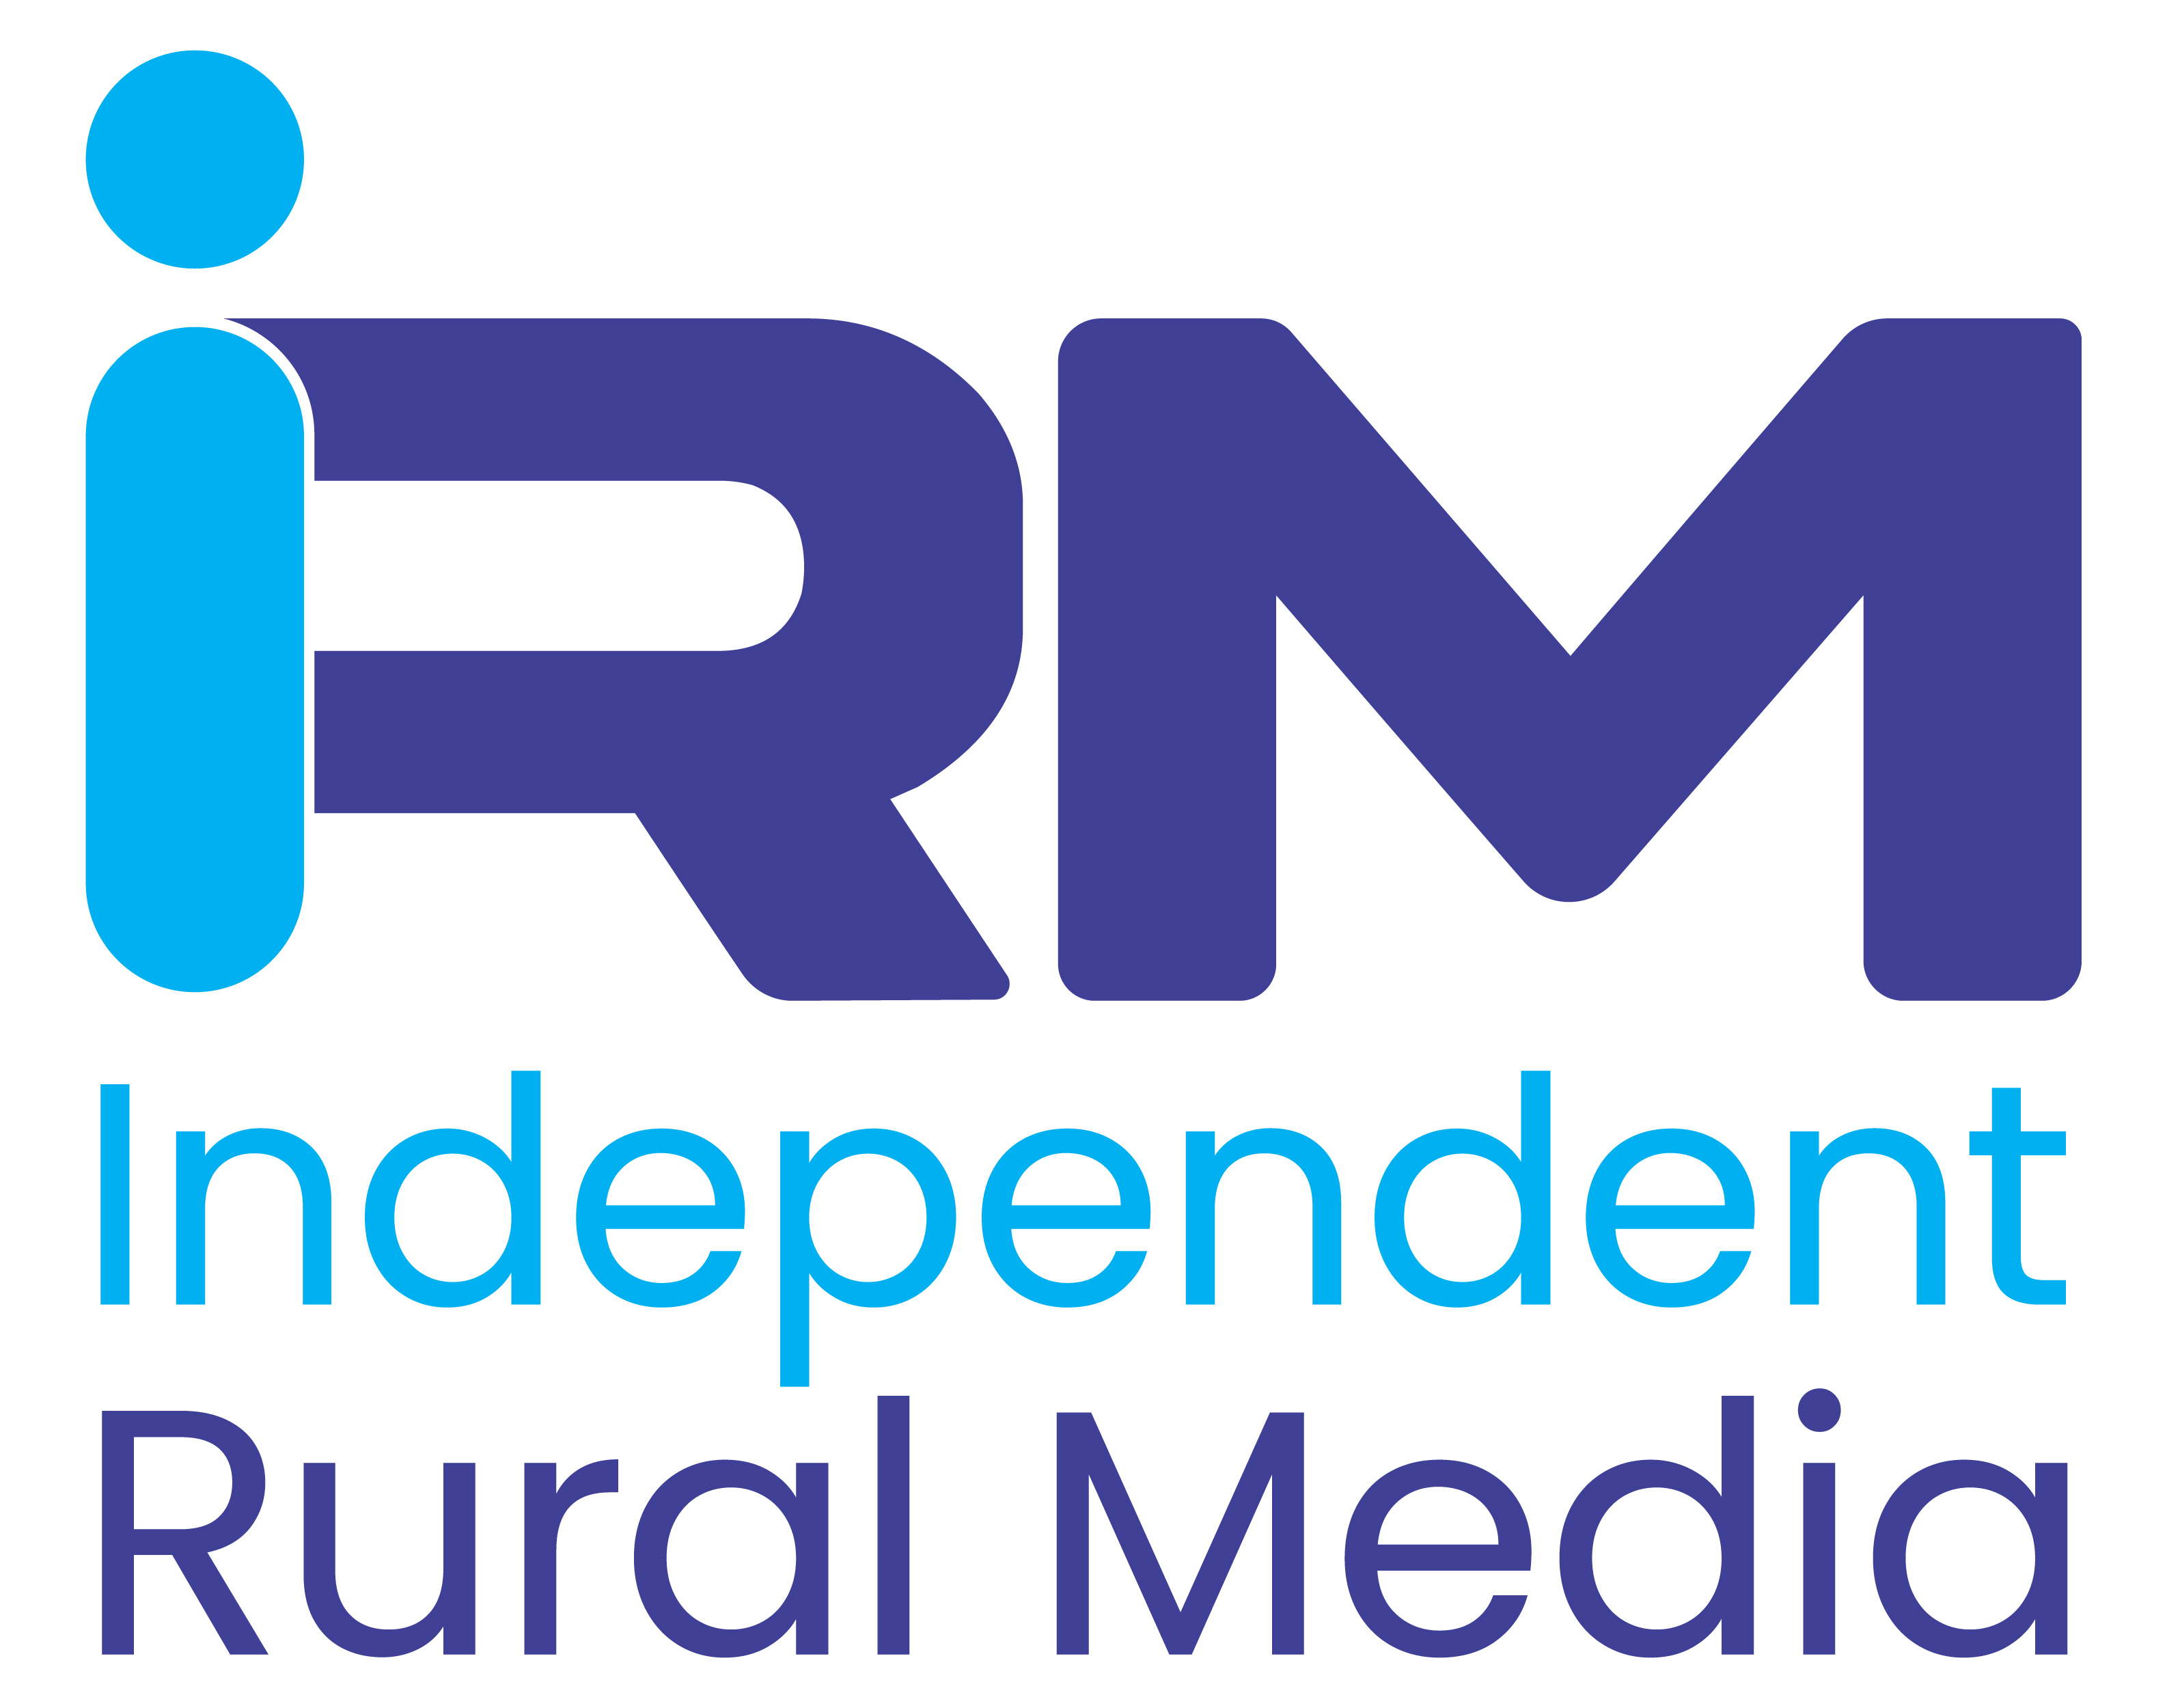 Independent Rural Media